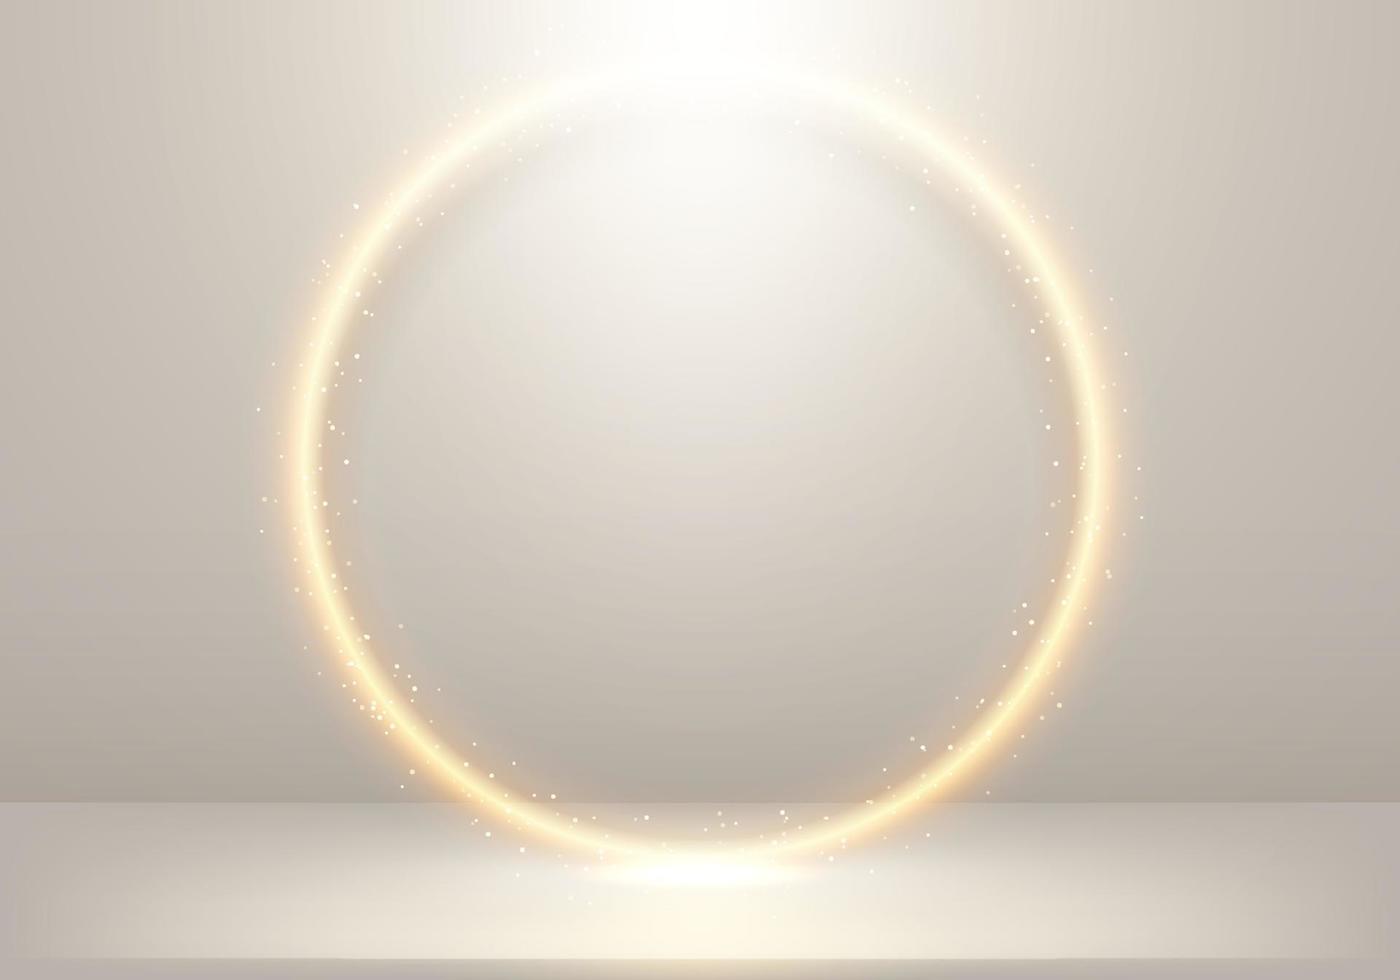 3d elegante círculo dourado brilhante com iluminação e brilho dourado no fundo bege do palco vetor